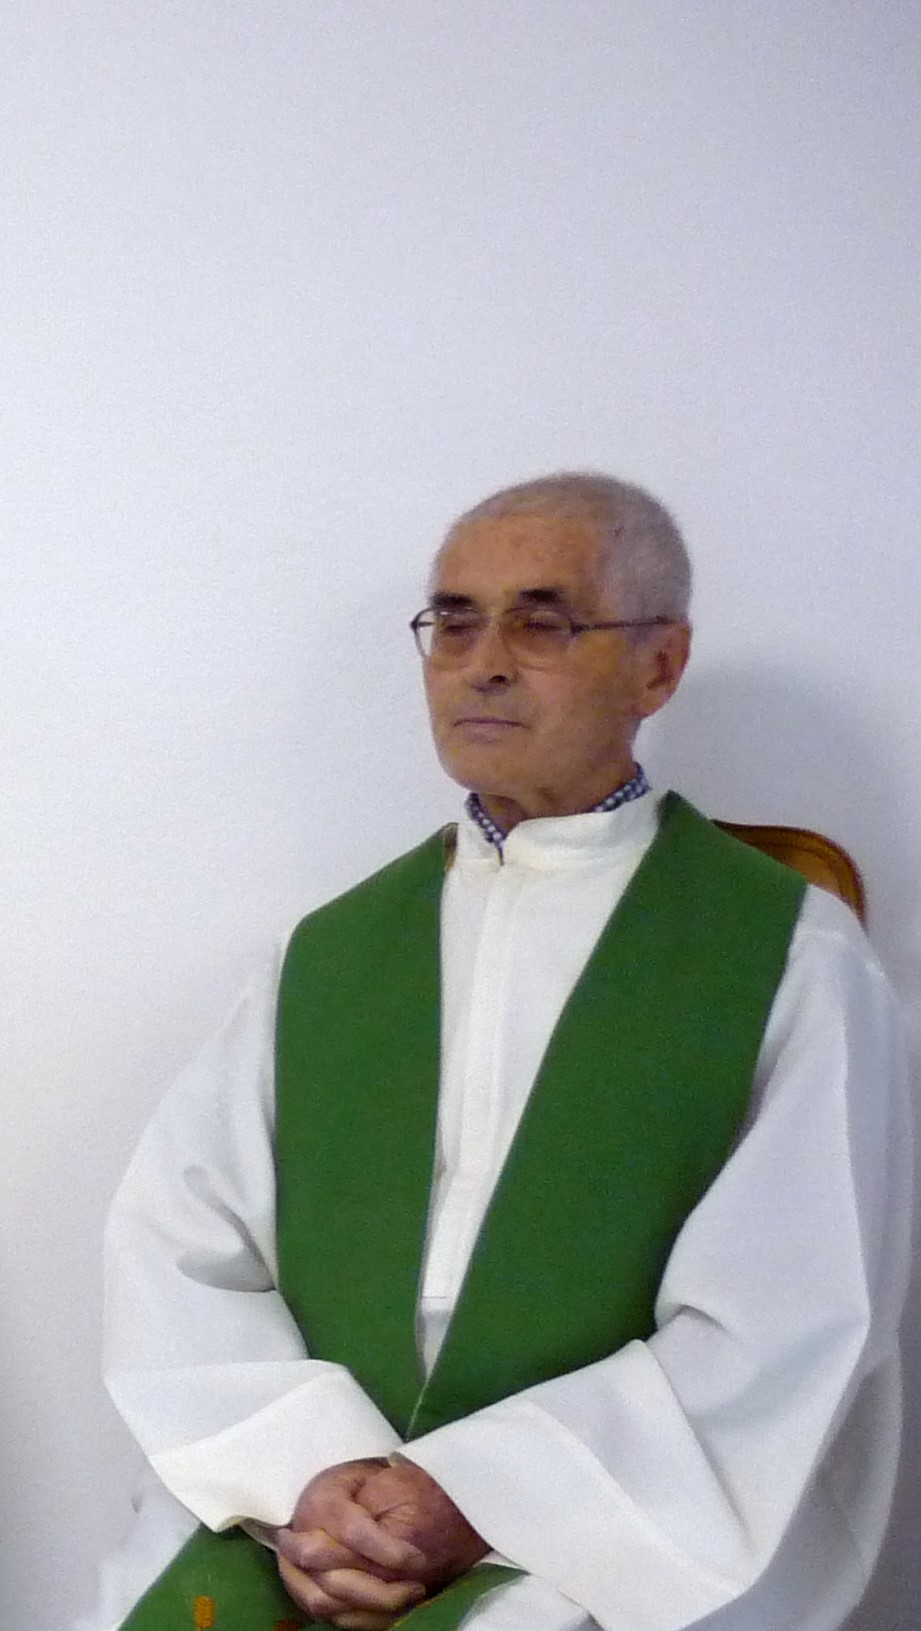 Padre Attilio Zamin